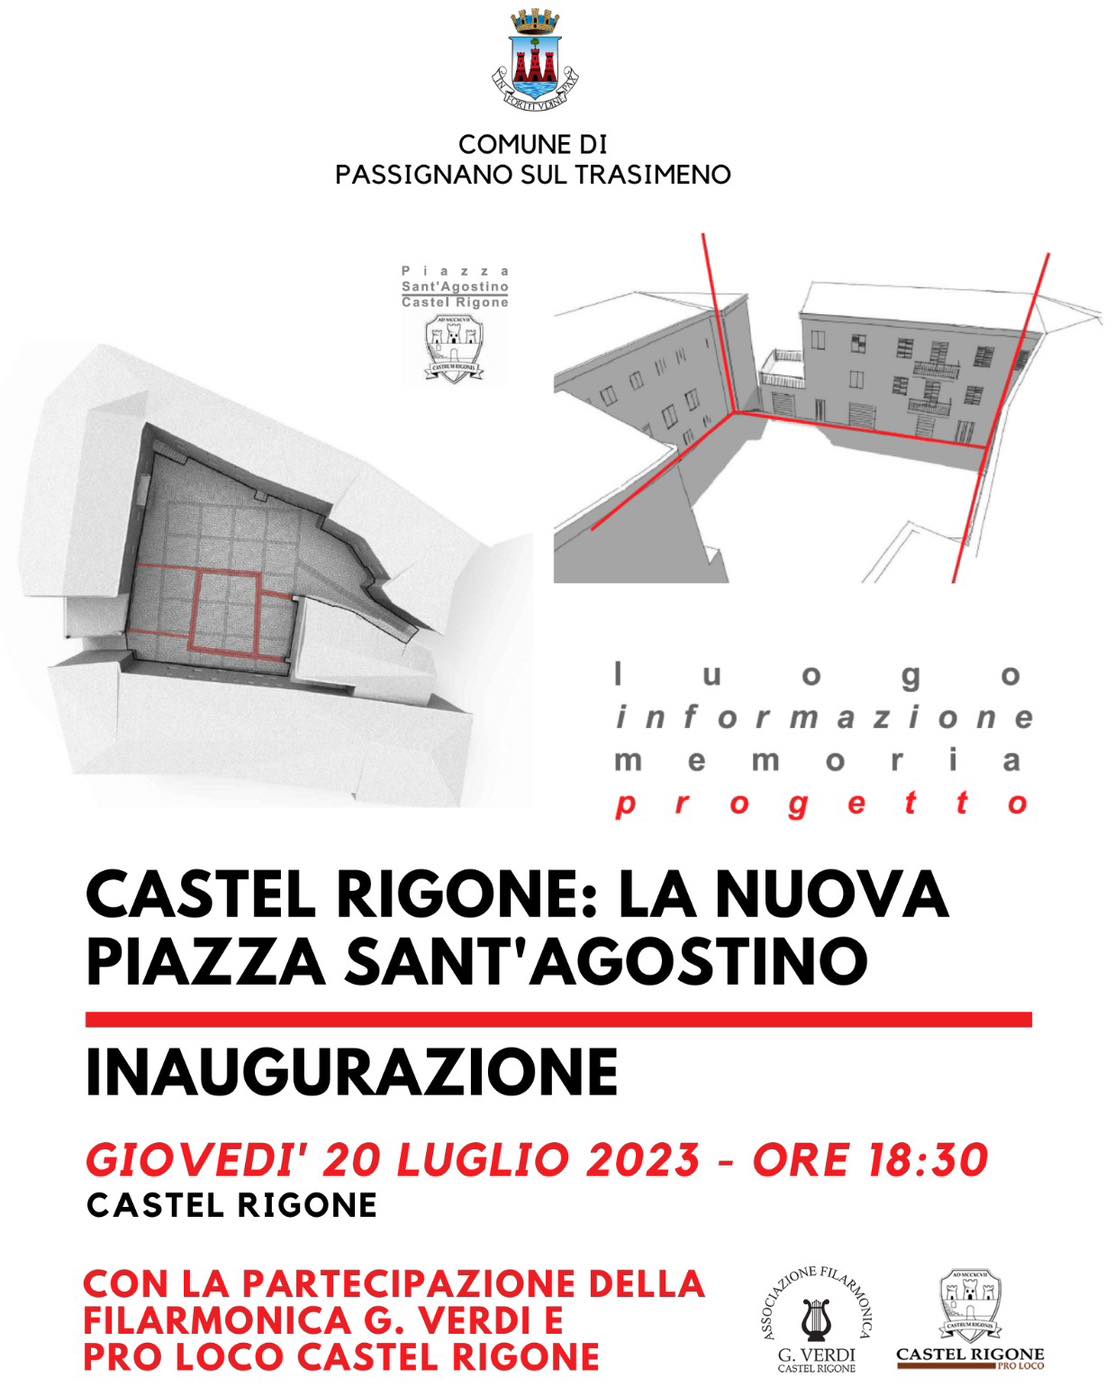 Passignano – Rinnovata Piazza Sant’Agostino di Castel Rigone